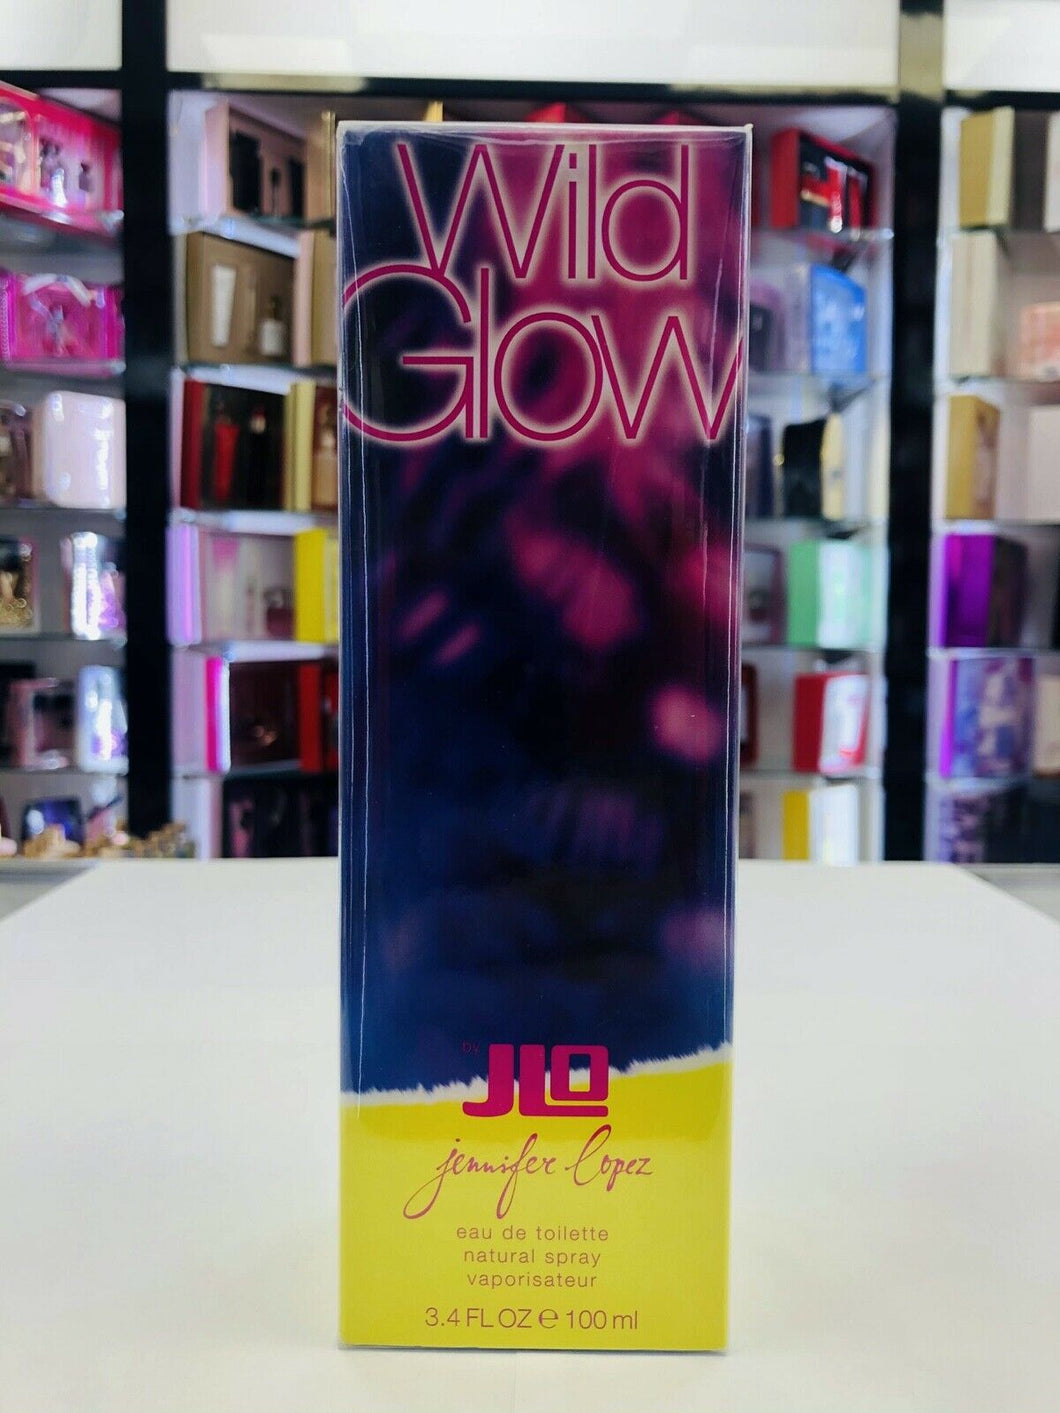 Jennifer Lopez Wild Glow Eau De Toilette Spray For Women 3.4 oz SEALED IN BOX - Perfume Gallery